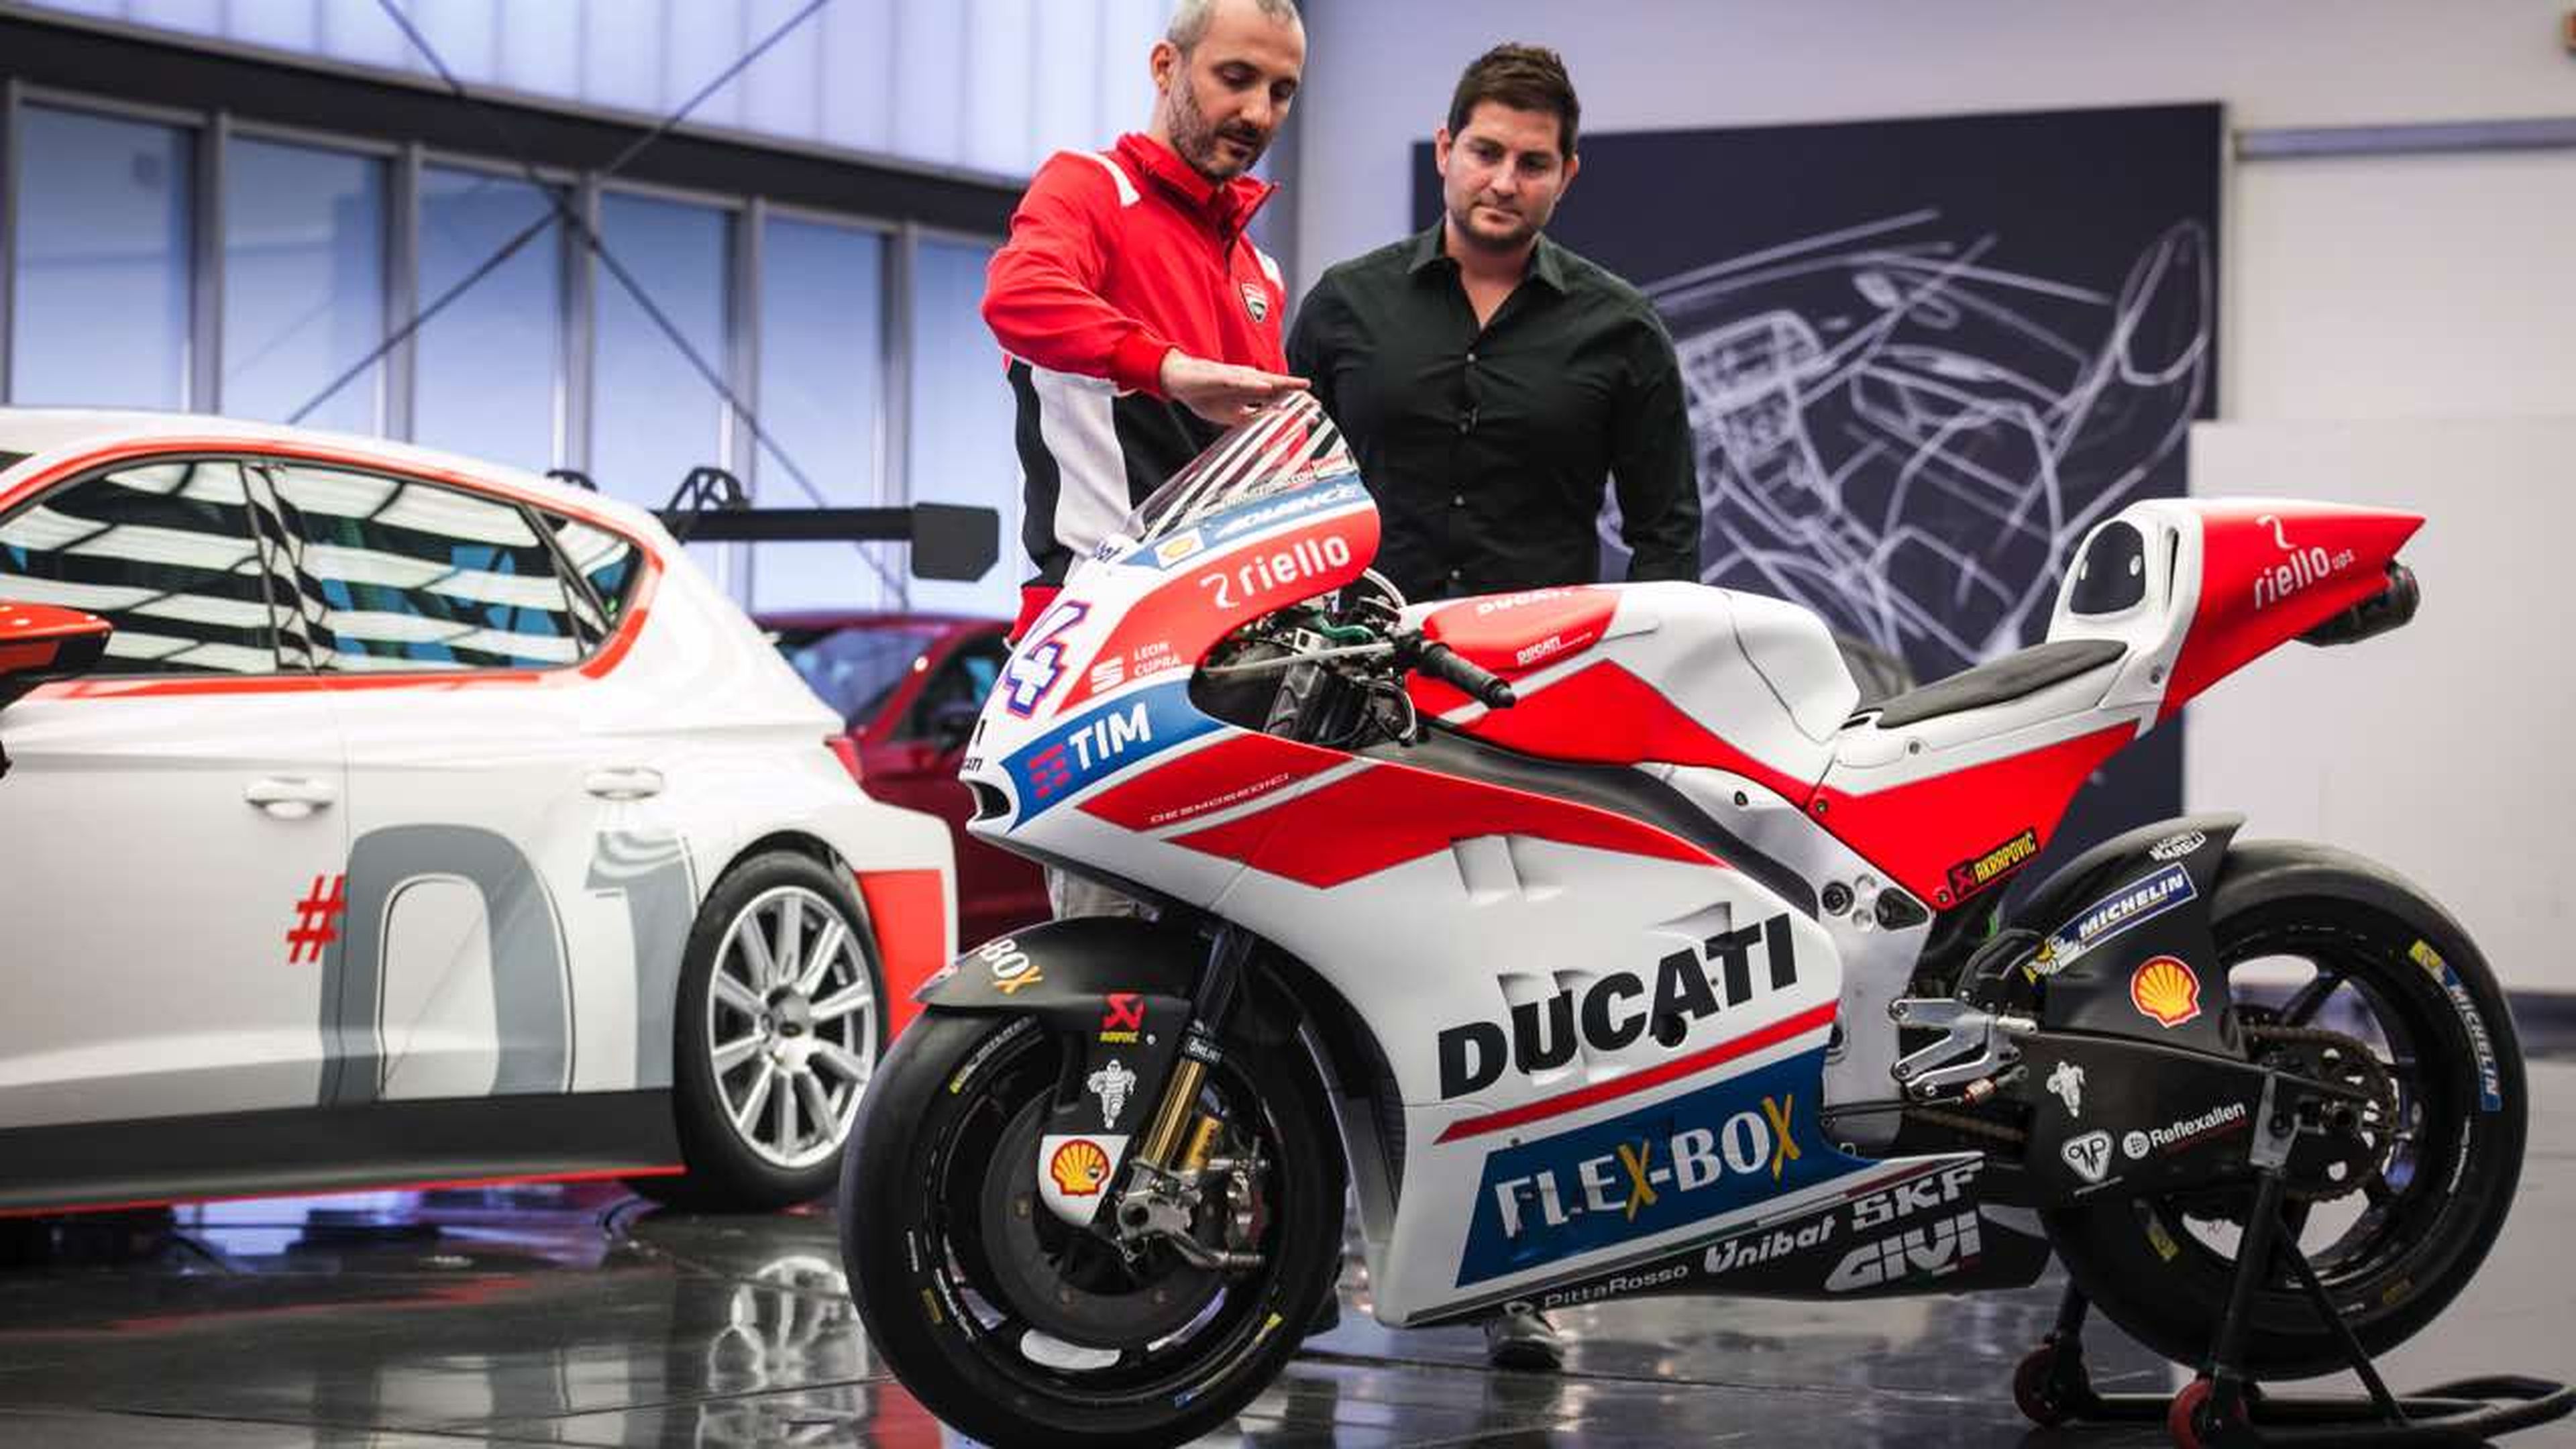 Preparados, listos ¡ya! Ésta es Ducati GP, la motocicleta eléctr